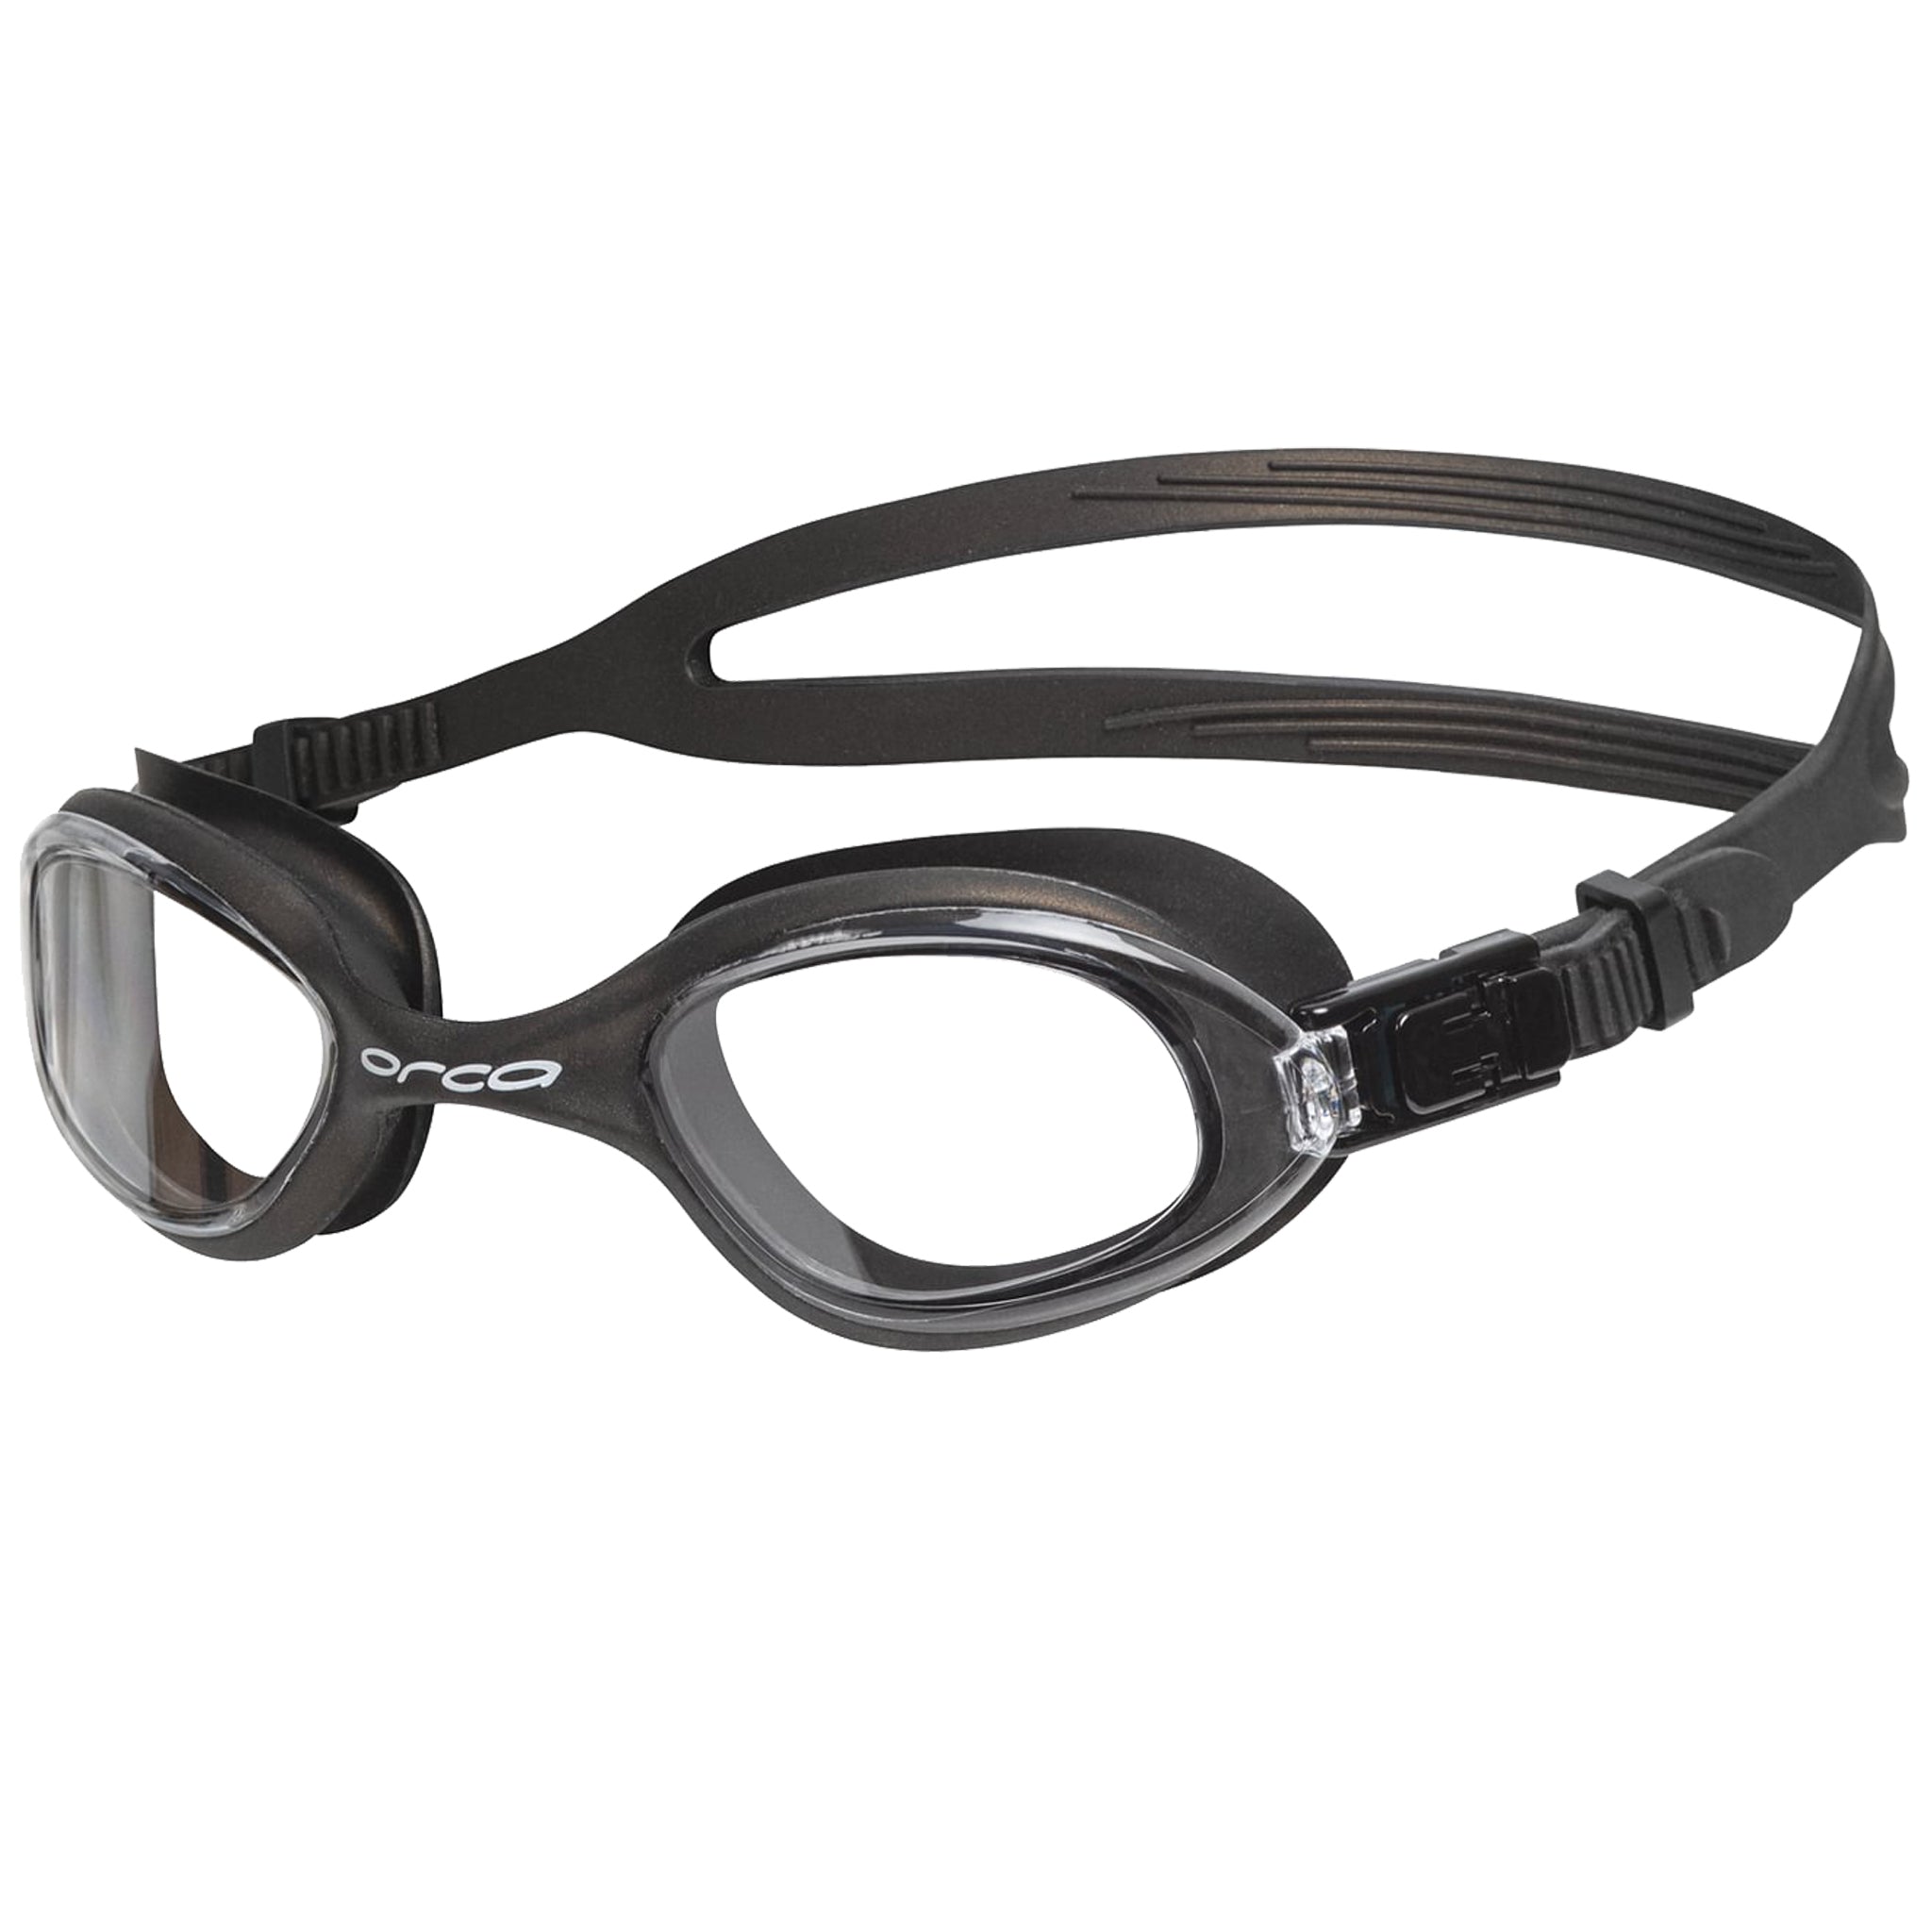 Orca Killa 180 Swimming Goggles Clear Lenses